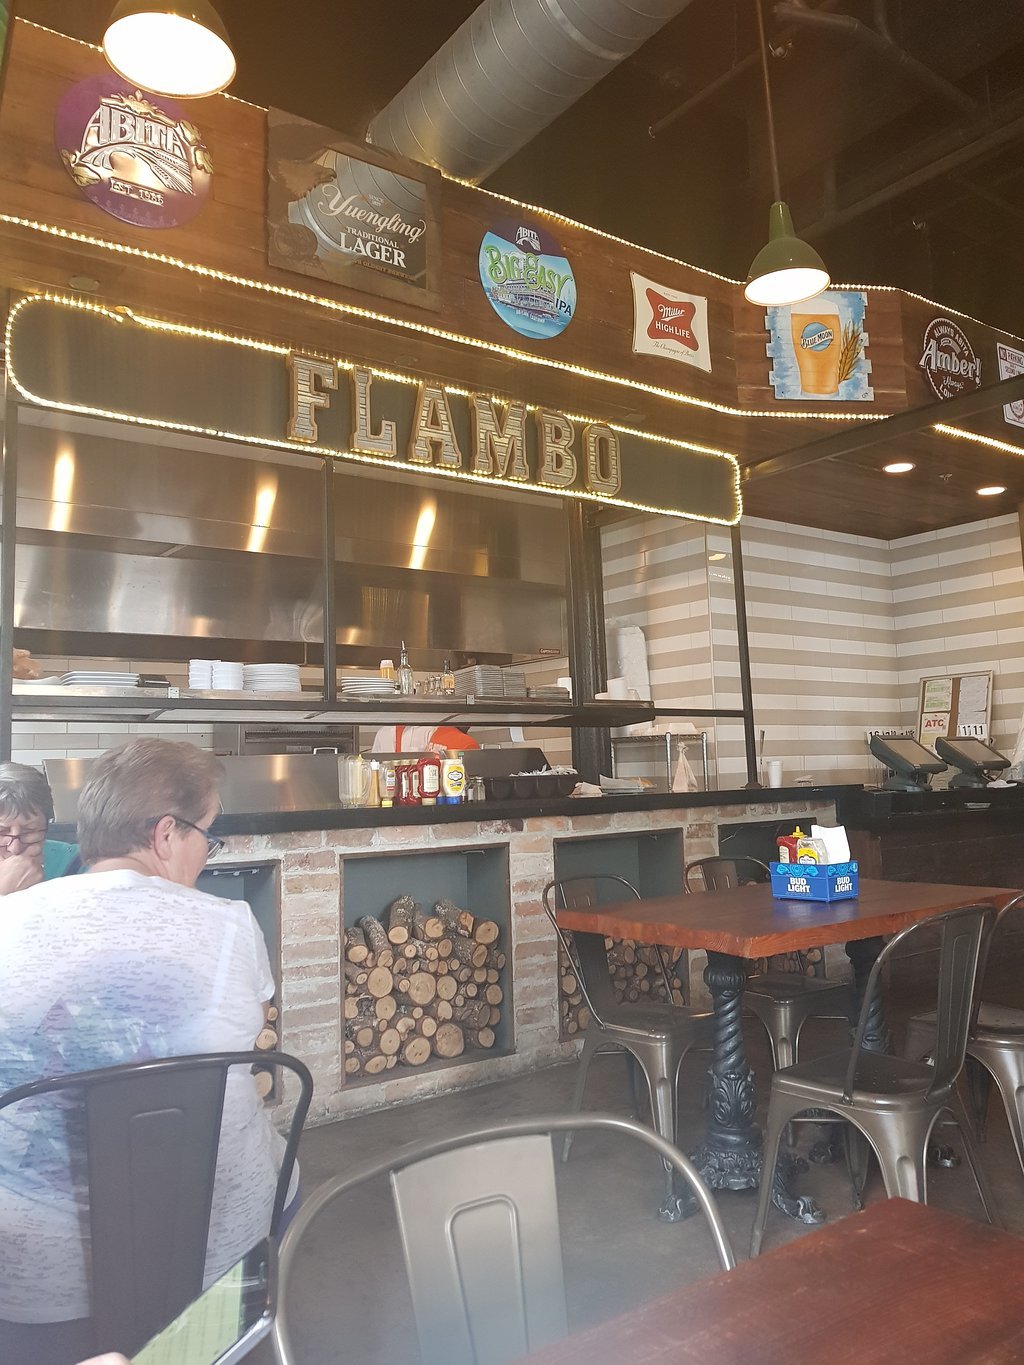 Flambo Burgers and Bar